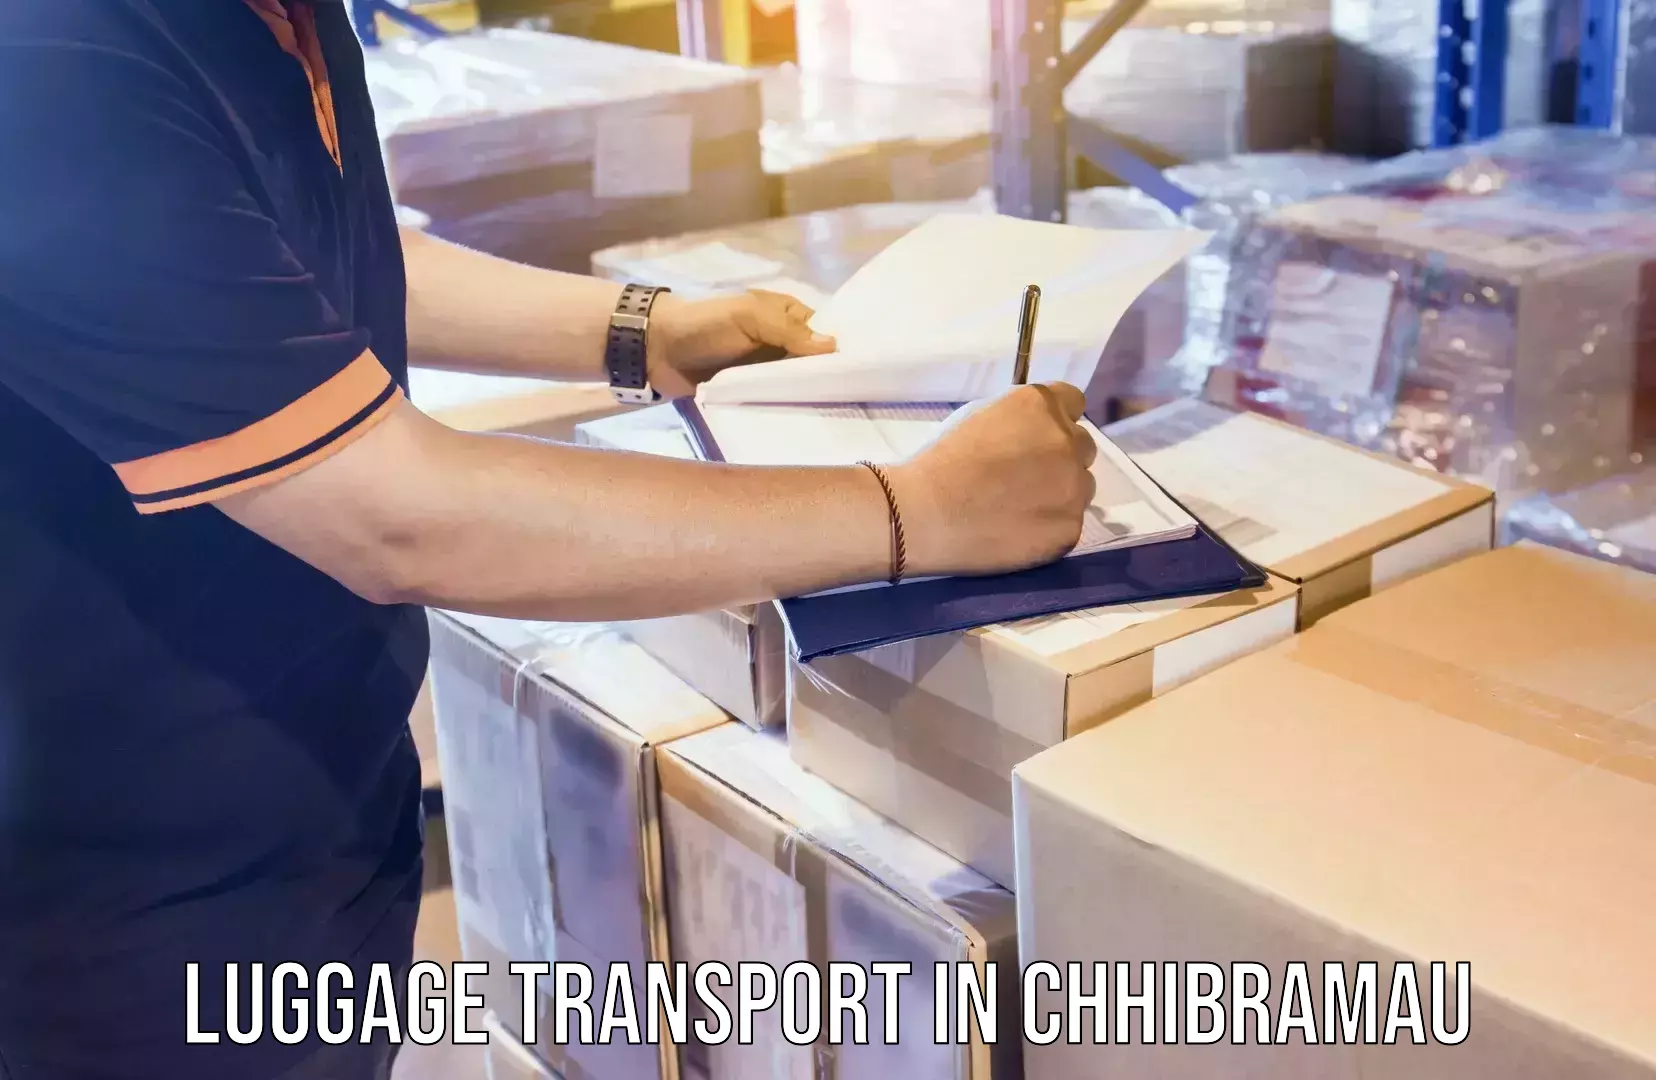 Luggage transfer service in Chhibramau